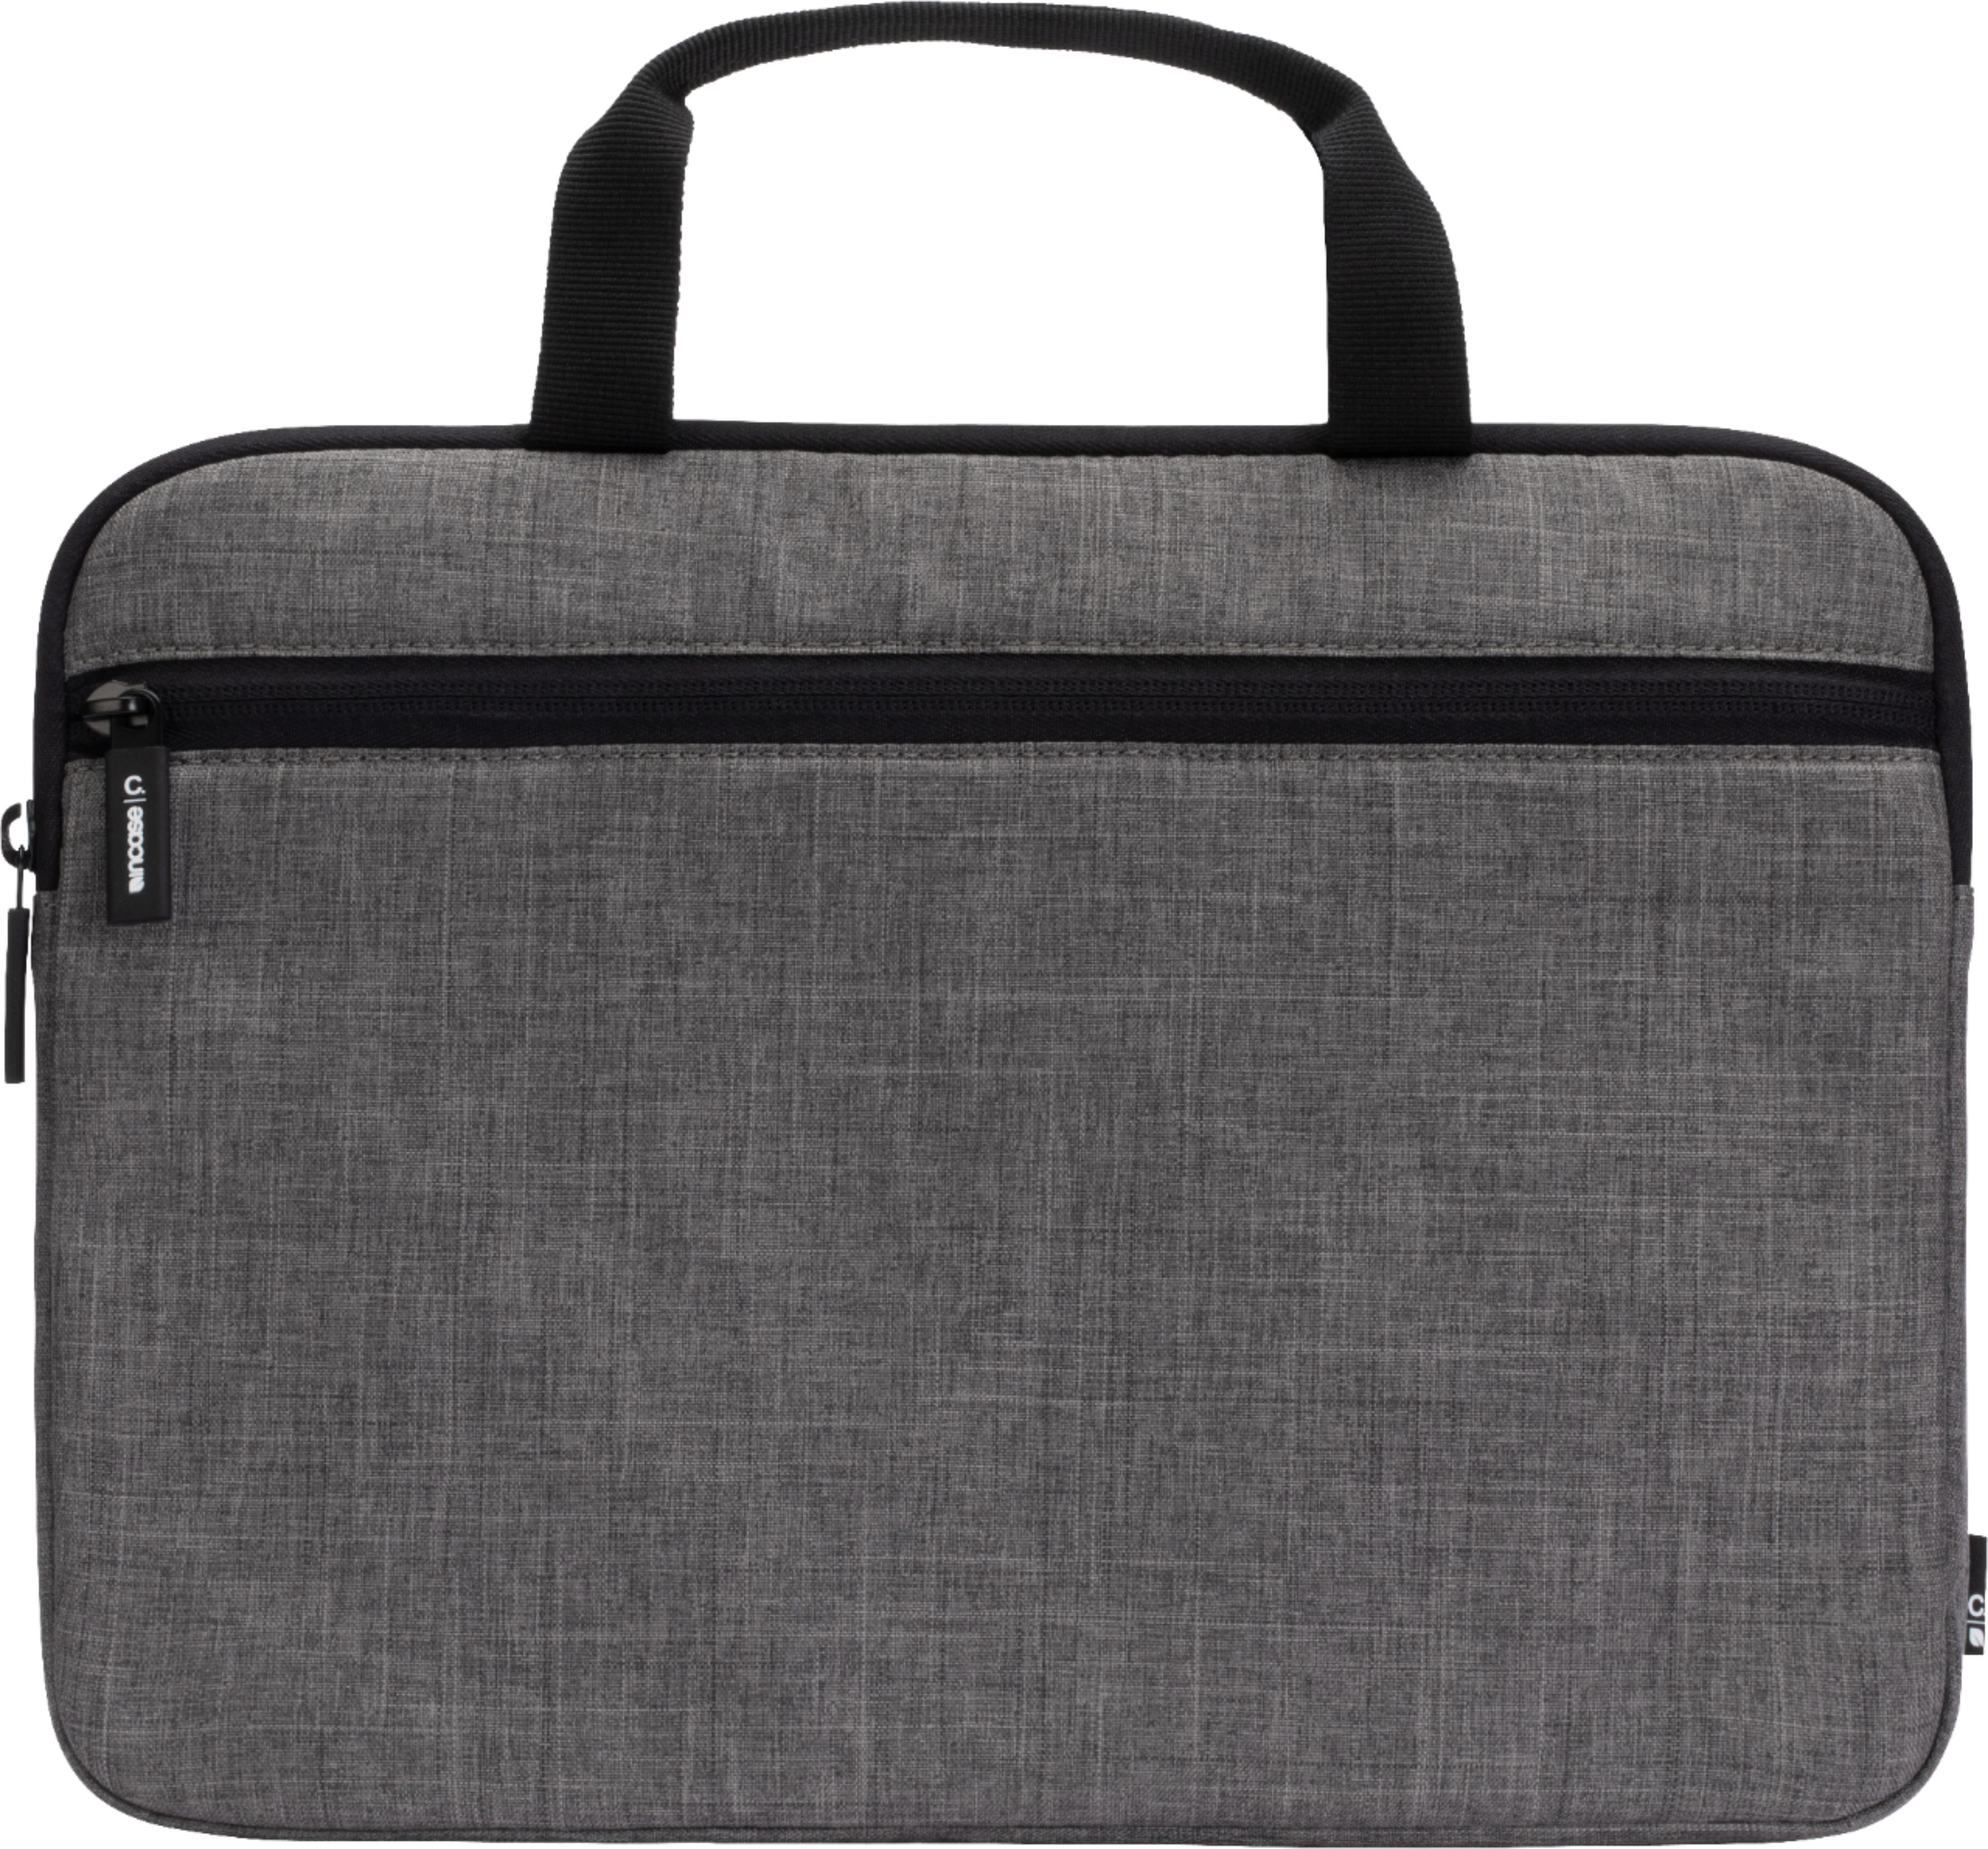 Husky Briefcase Protective Bag Laptop Shoulder Bag 13 Inch 